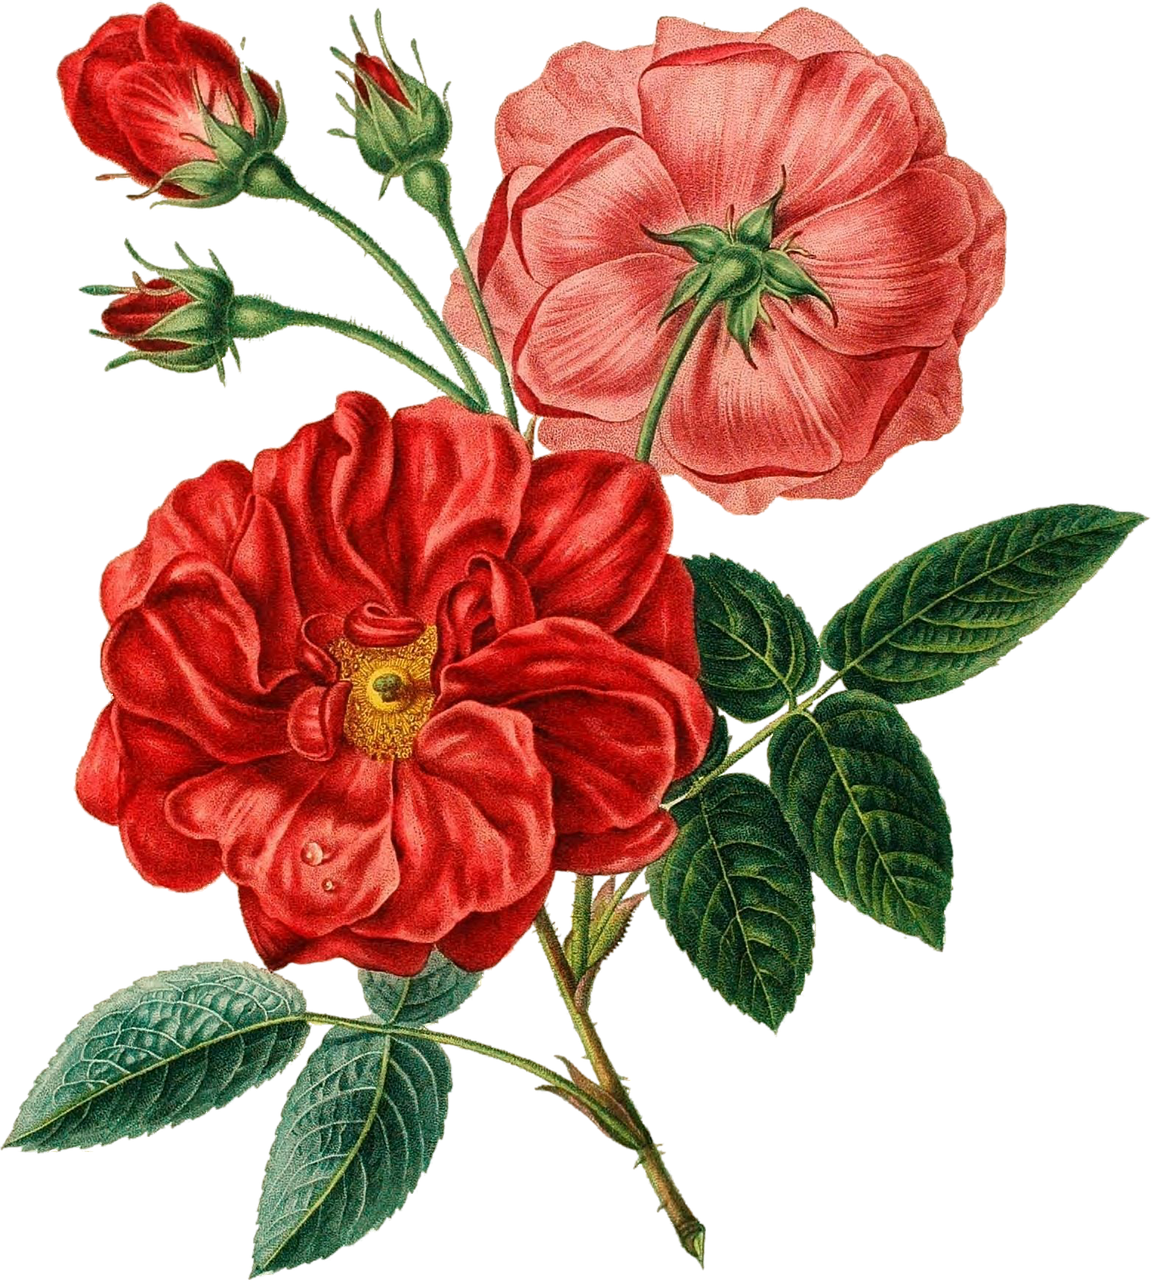 Vintage Red Rose Illustration PNG image